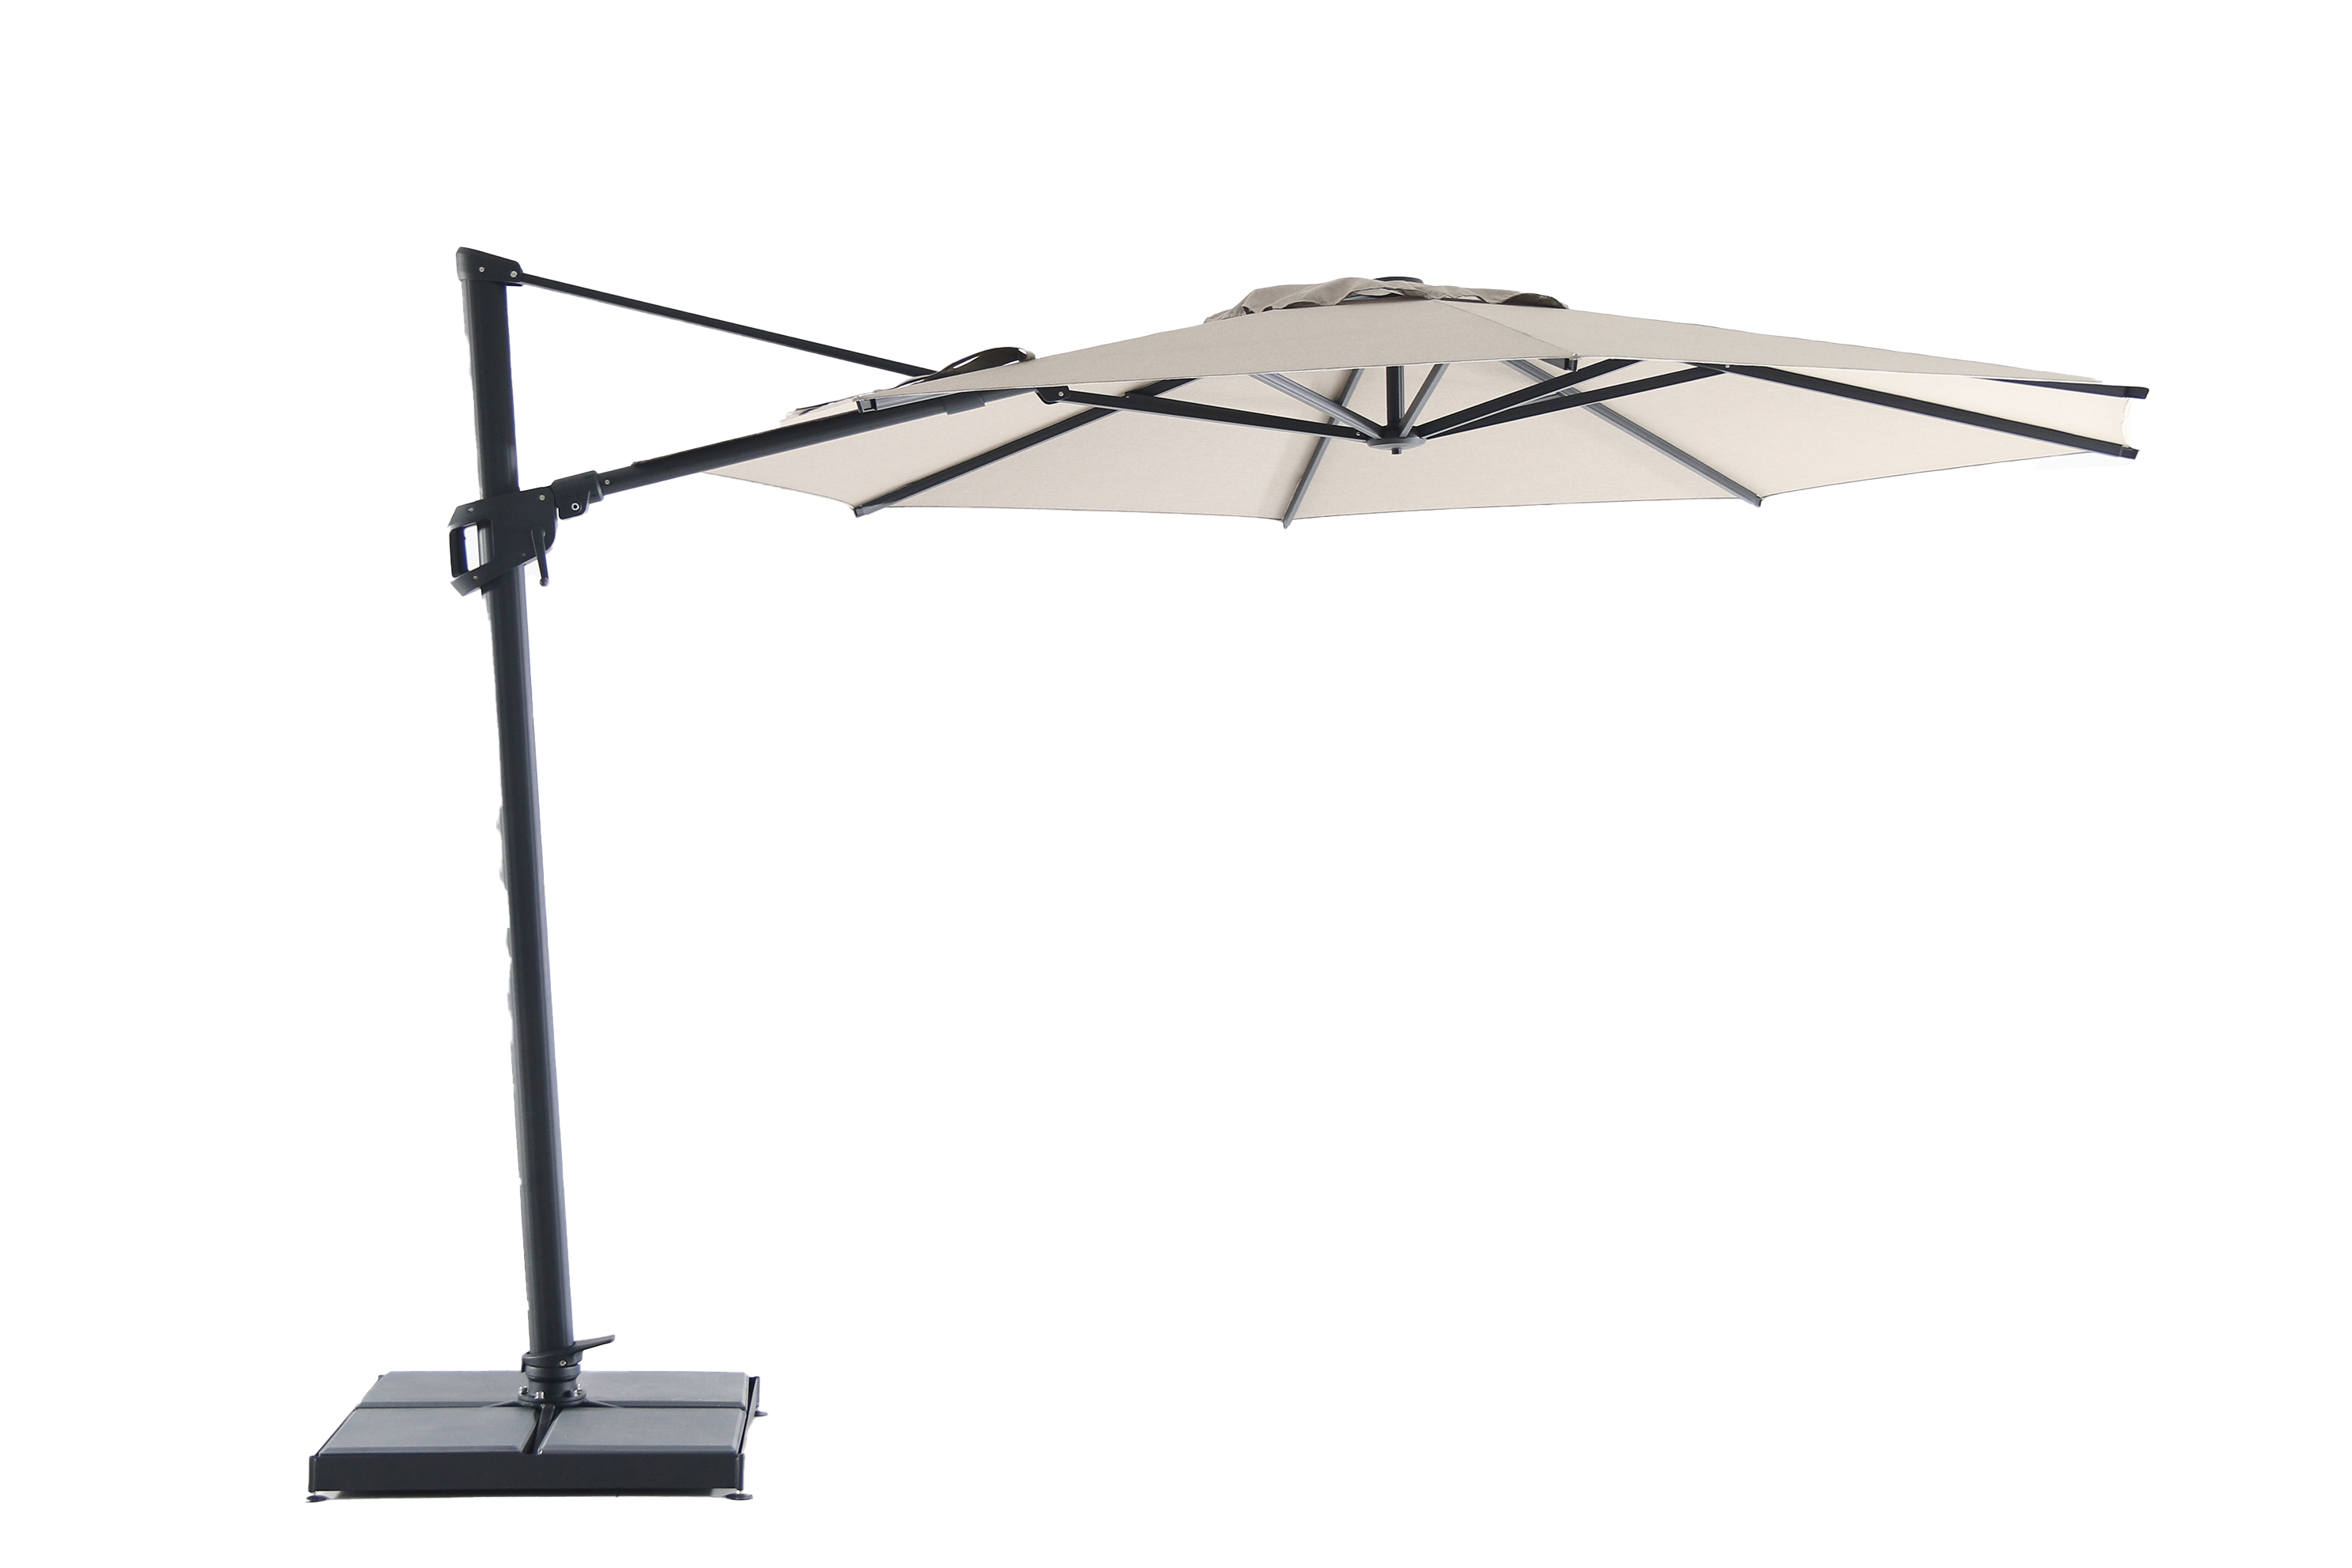 10ft Round Full Aluminum Functional High Quality Hanging Umbrella, MEERU